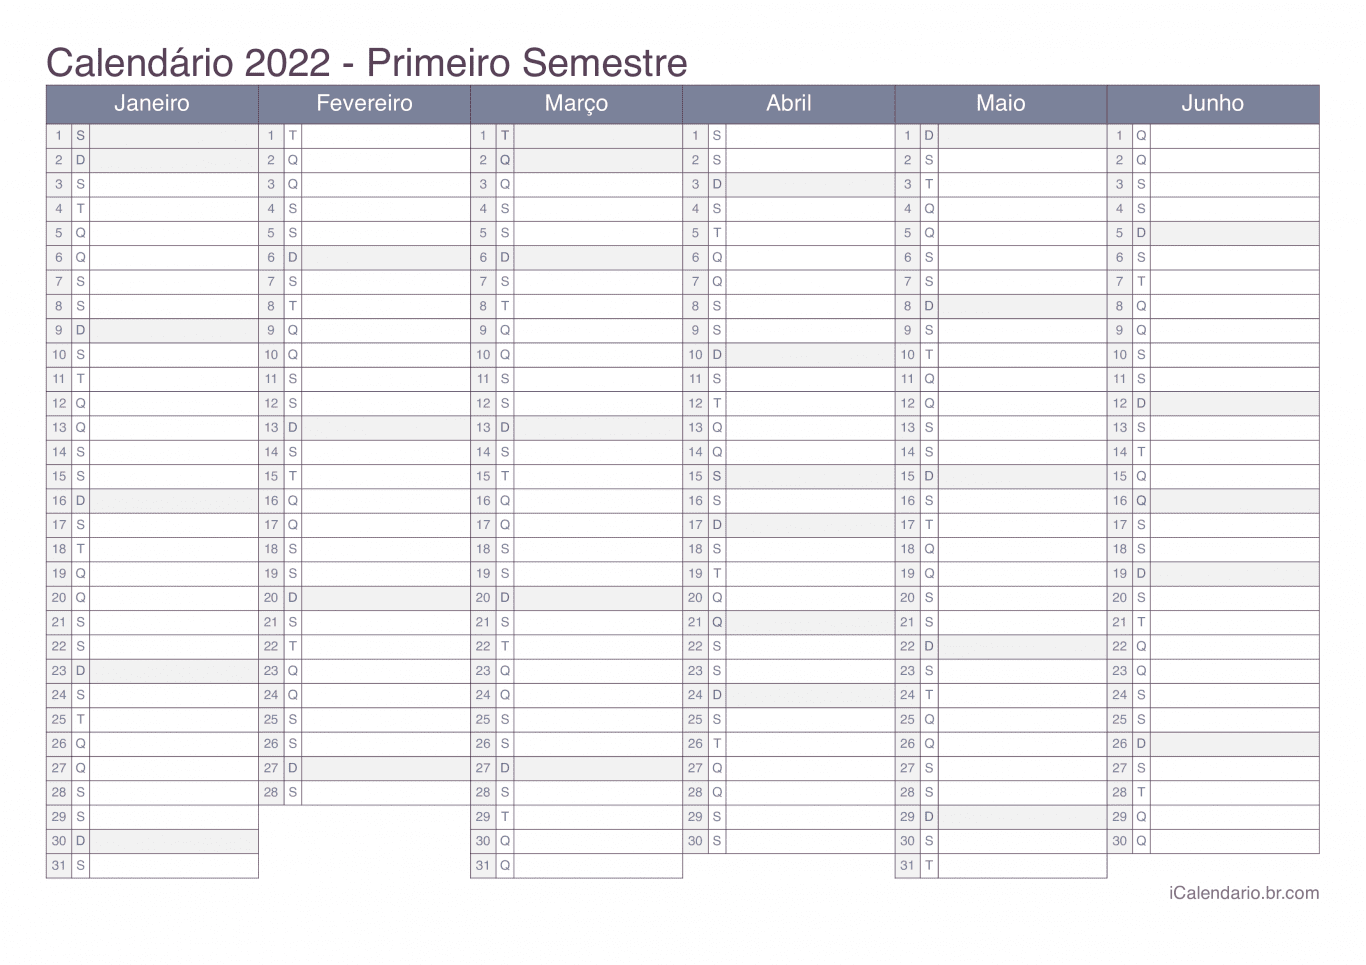 Calendário por semestre 2022 - Office